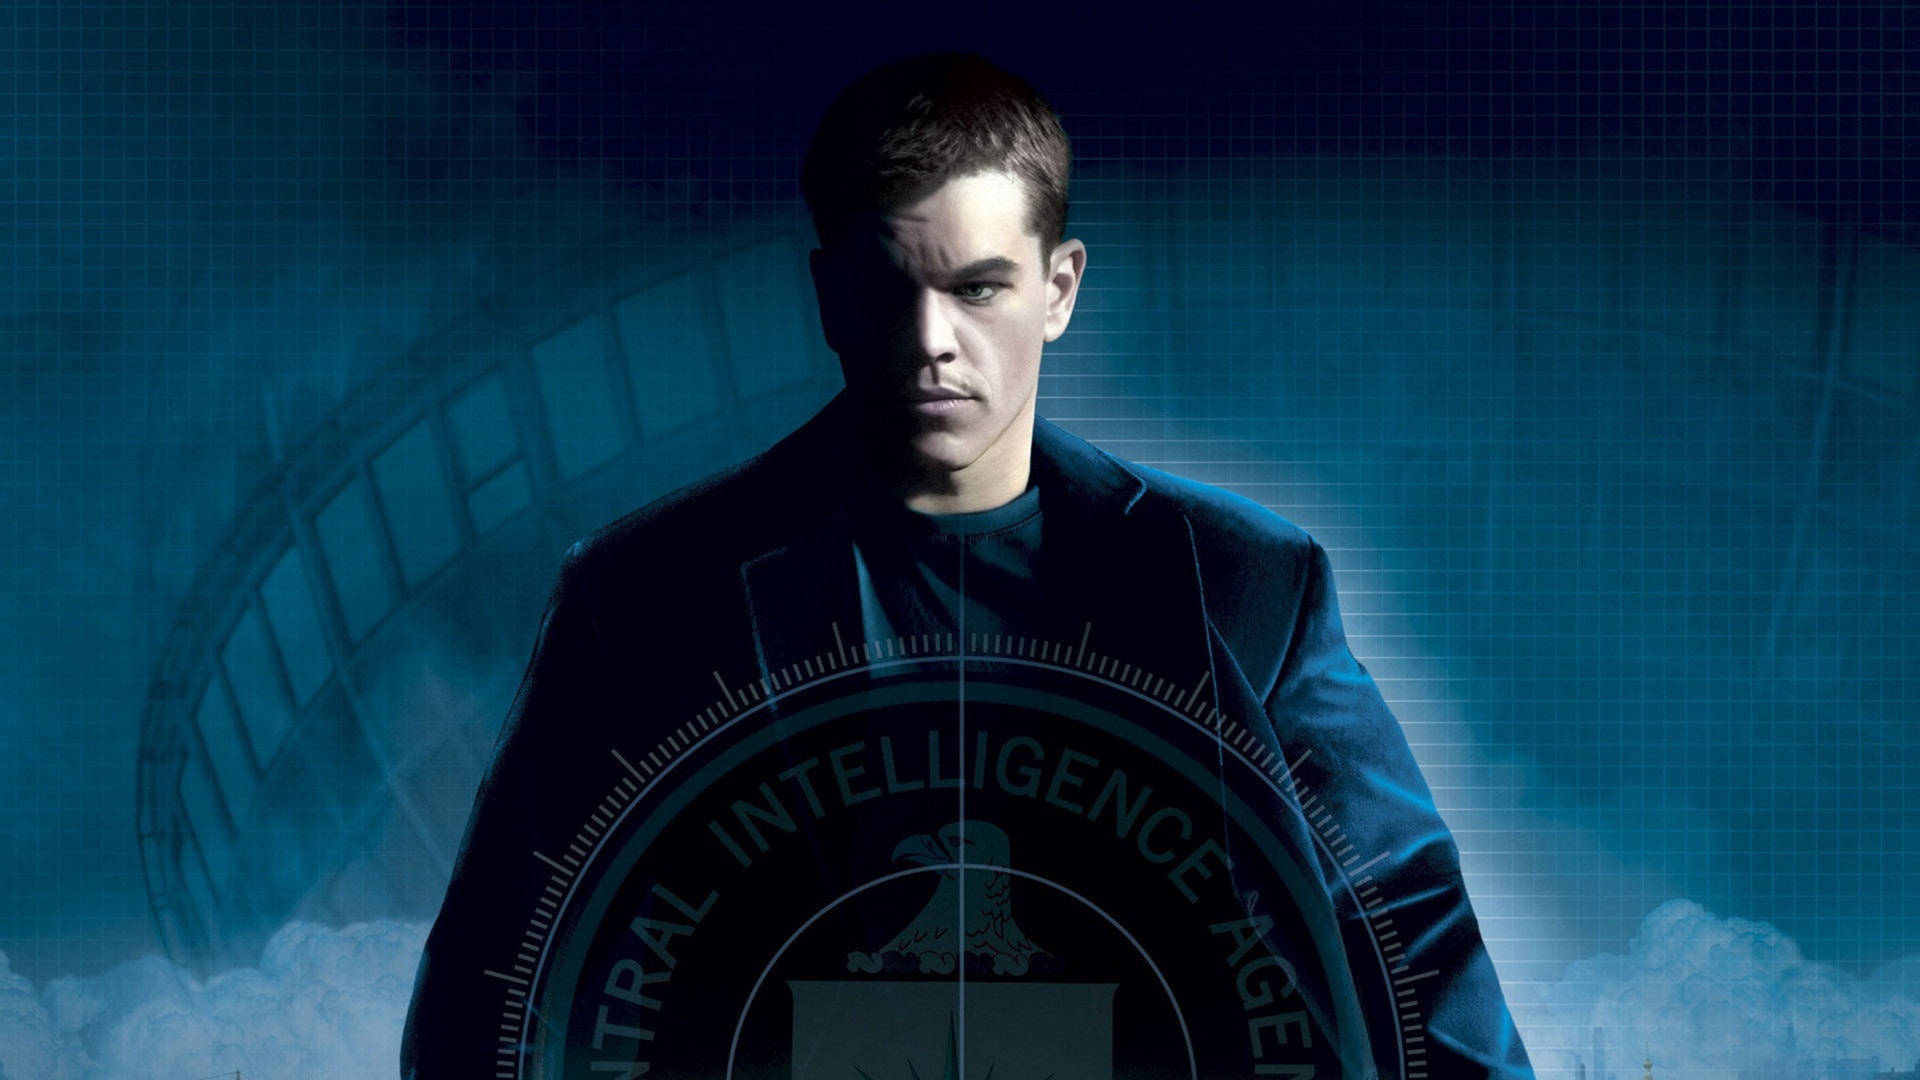 Bourneschauspieler Matt Damon Wallpaper